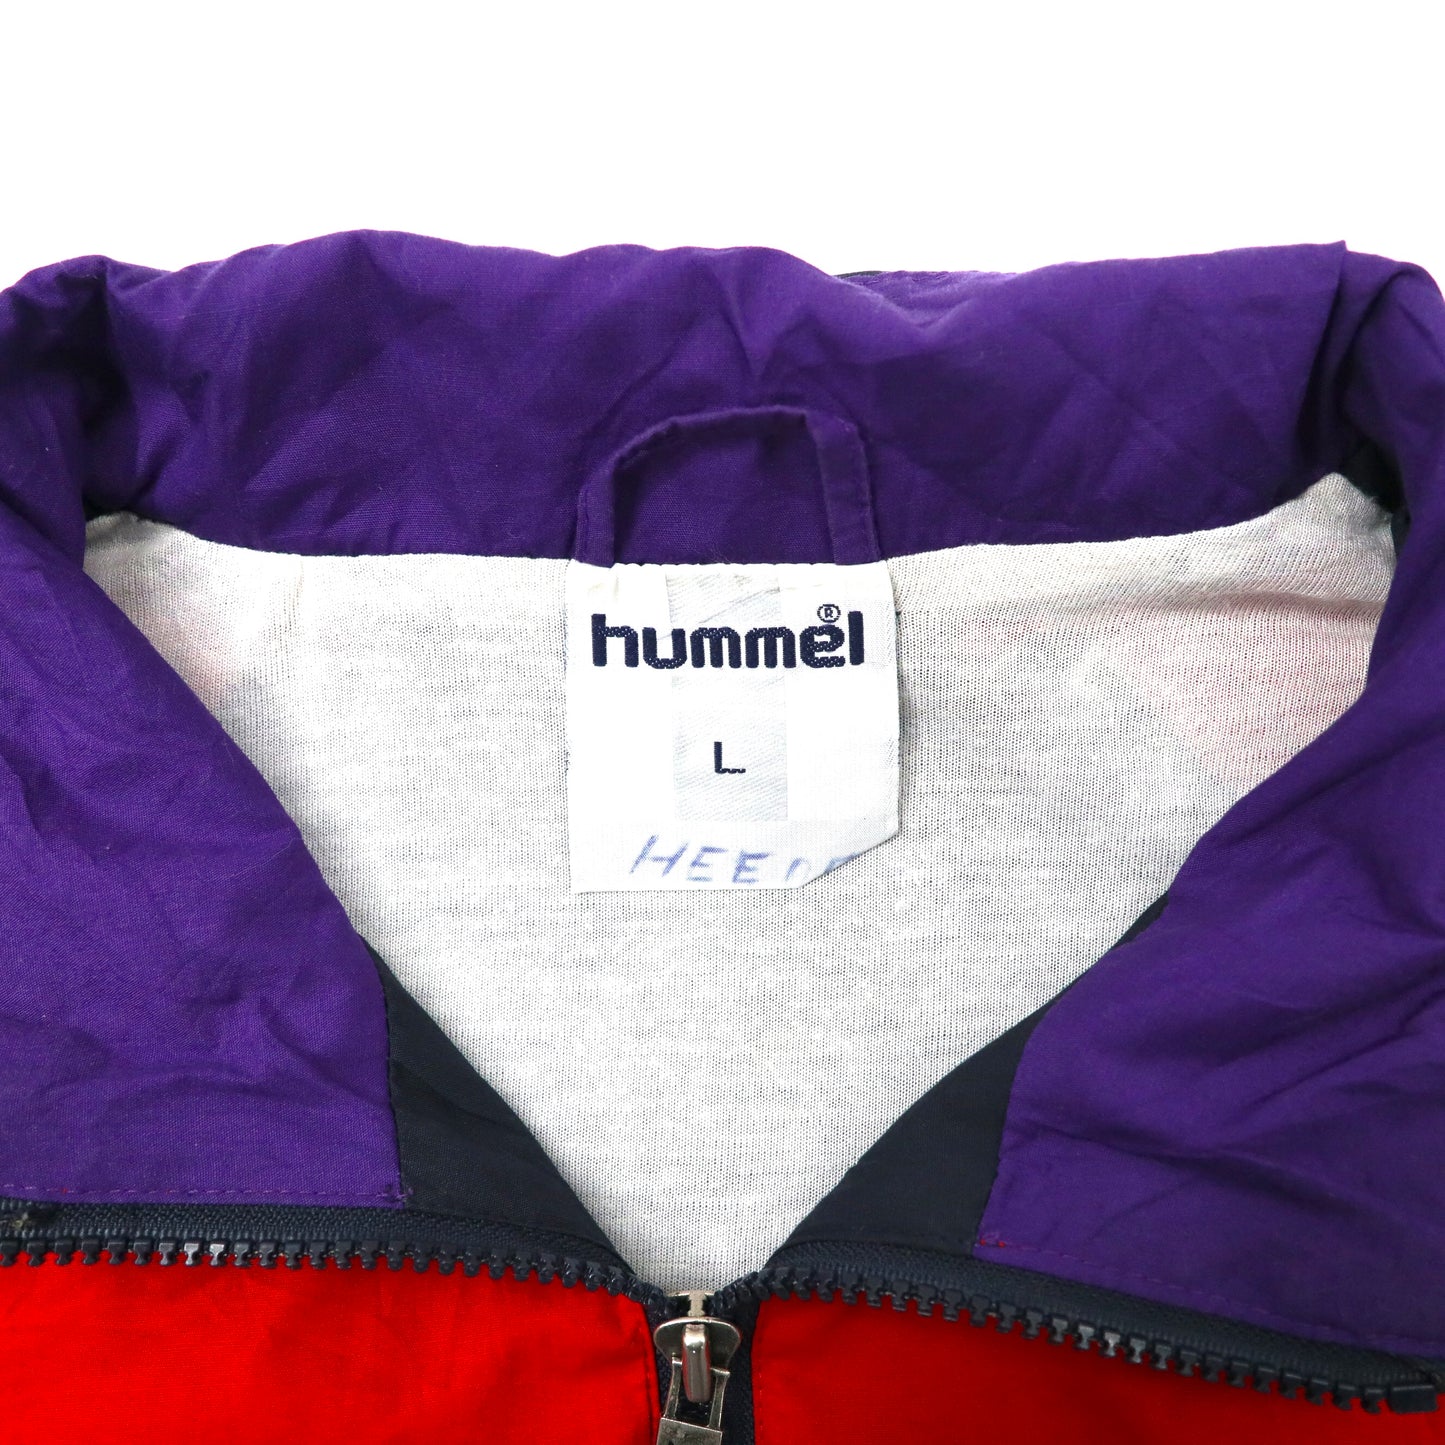 hummel ビッグサイズ ナイロンジャケット L マルチカラー DANMARK 90年代